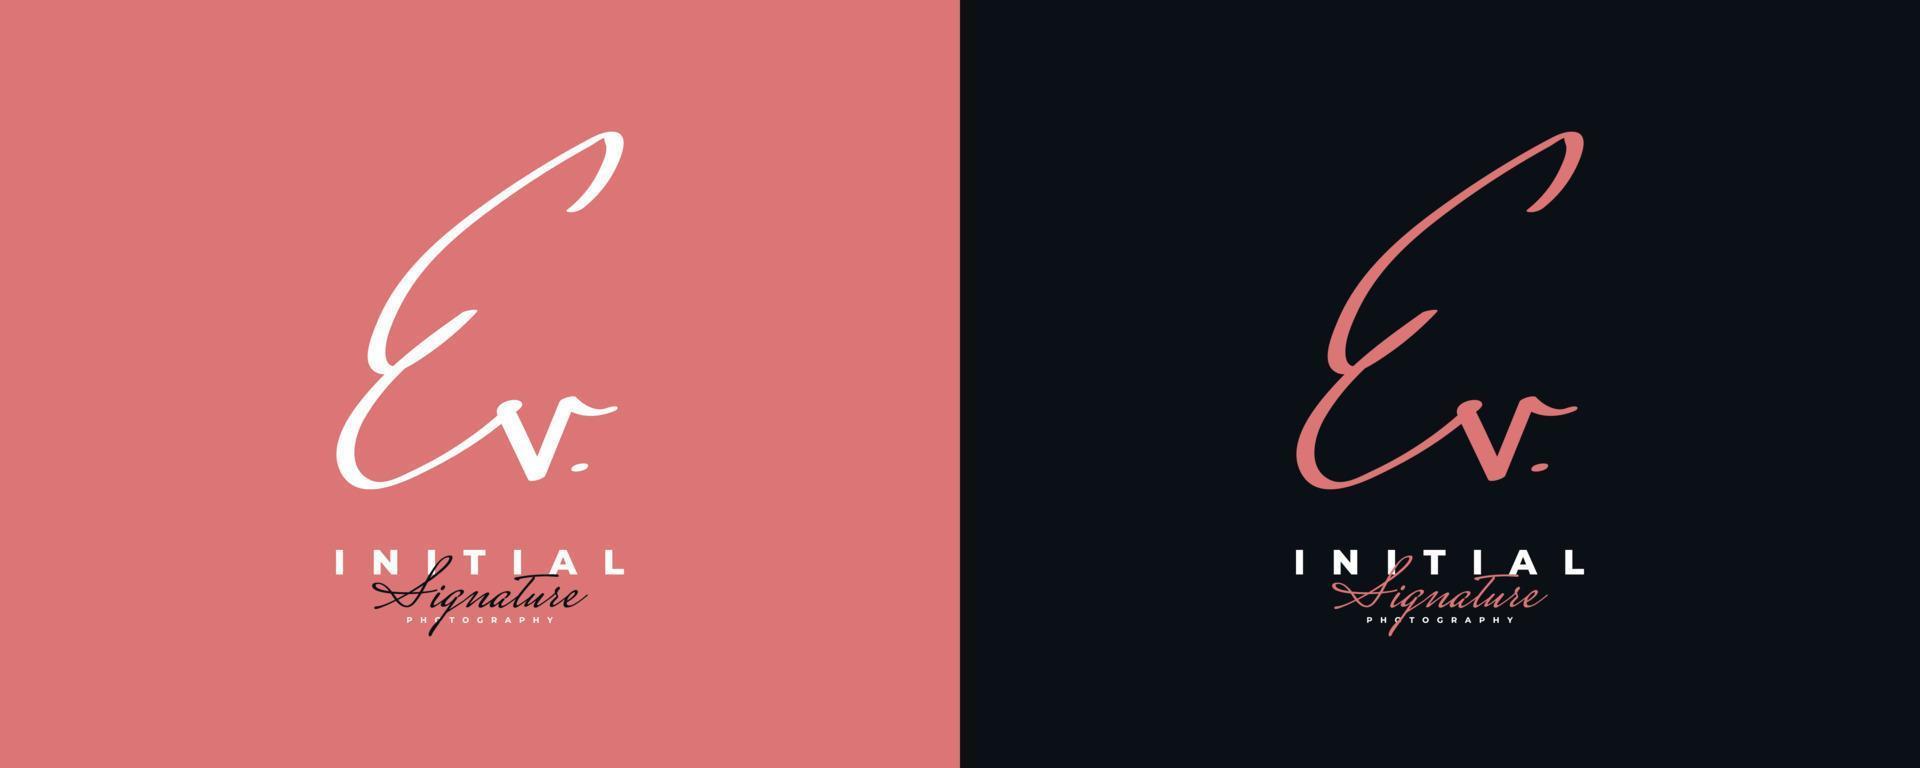 initial e och v logotyp design med i elegant och minimalistisk handstil. ev signaturlogotyp eller symbol för bröllop, mode, smycken, boutique och affärsidentitet vektor